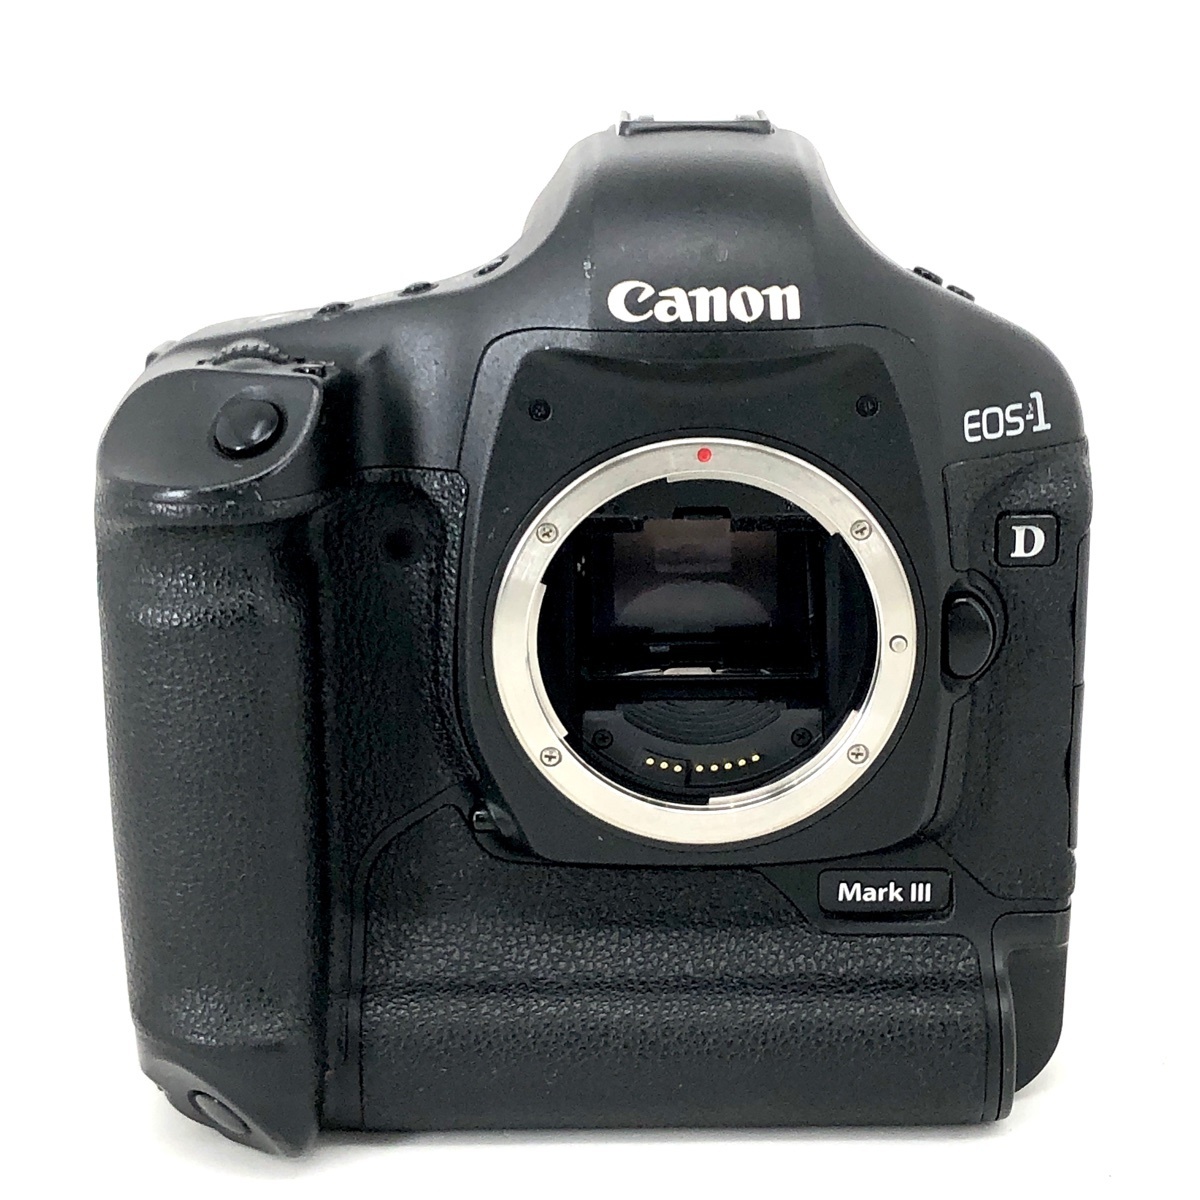 40％割引最適な価格 キヤノン Canon EOS 1D Mark III ボディ デジタル 一眼レフカメラ 【中古】 デジタル一眼 カメラ、光学機器  家電、AV、カメラ-APP.GIMPANEWS.COM